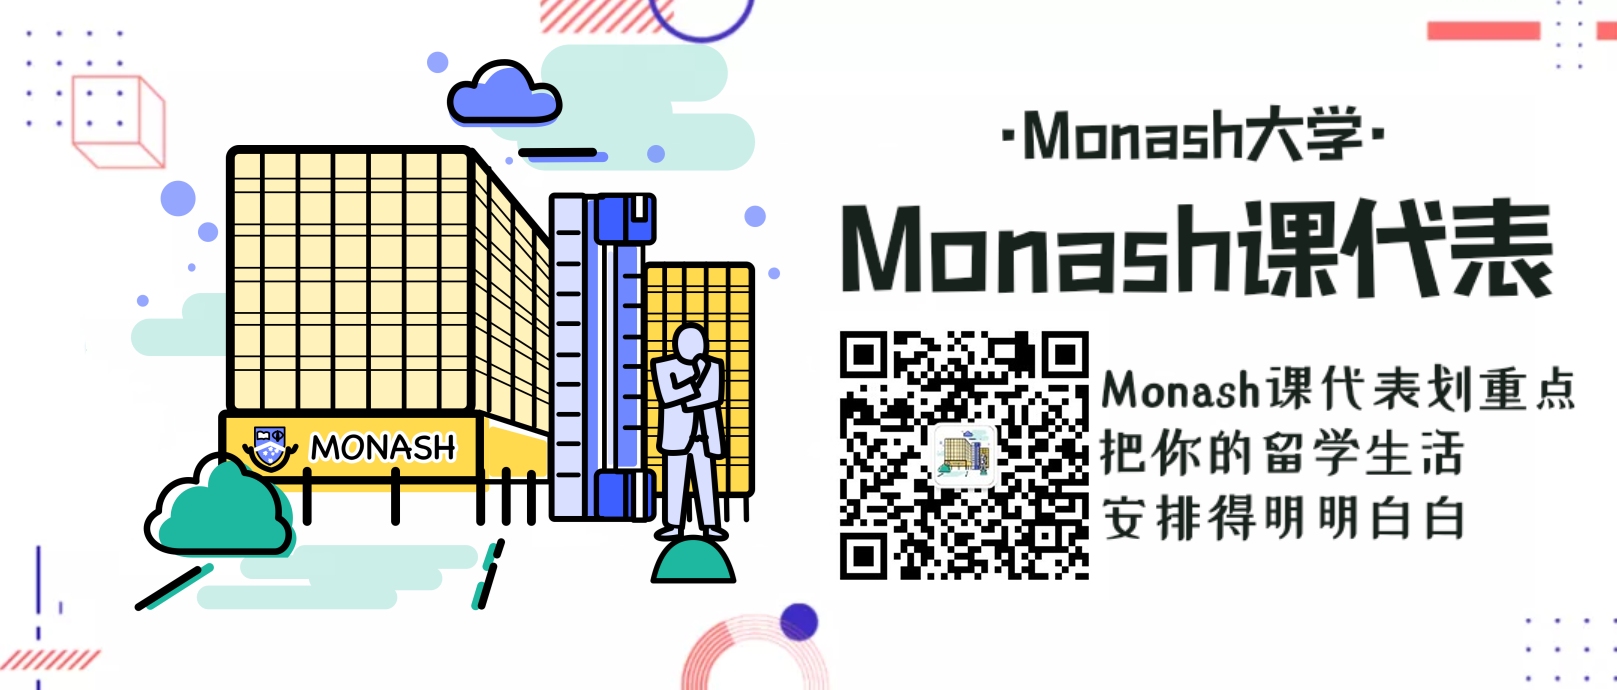 Monash2